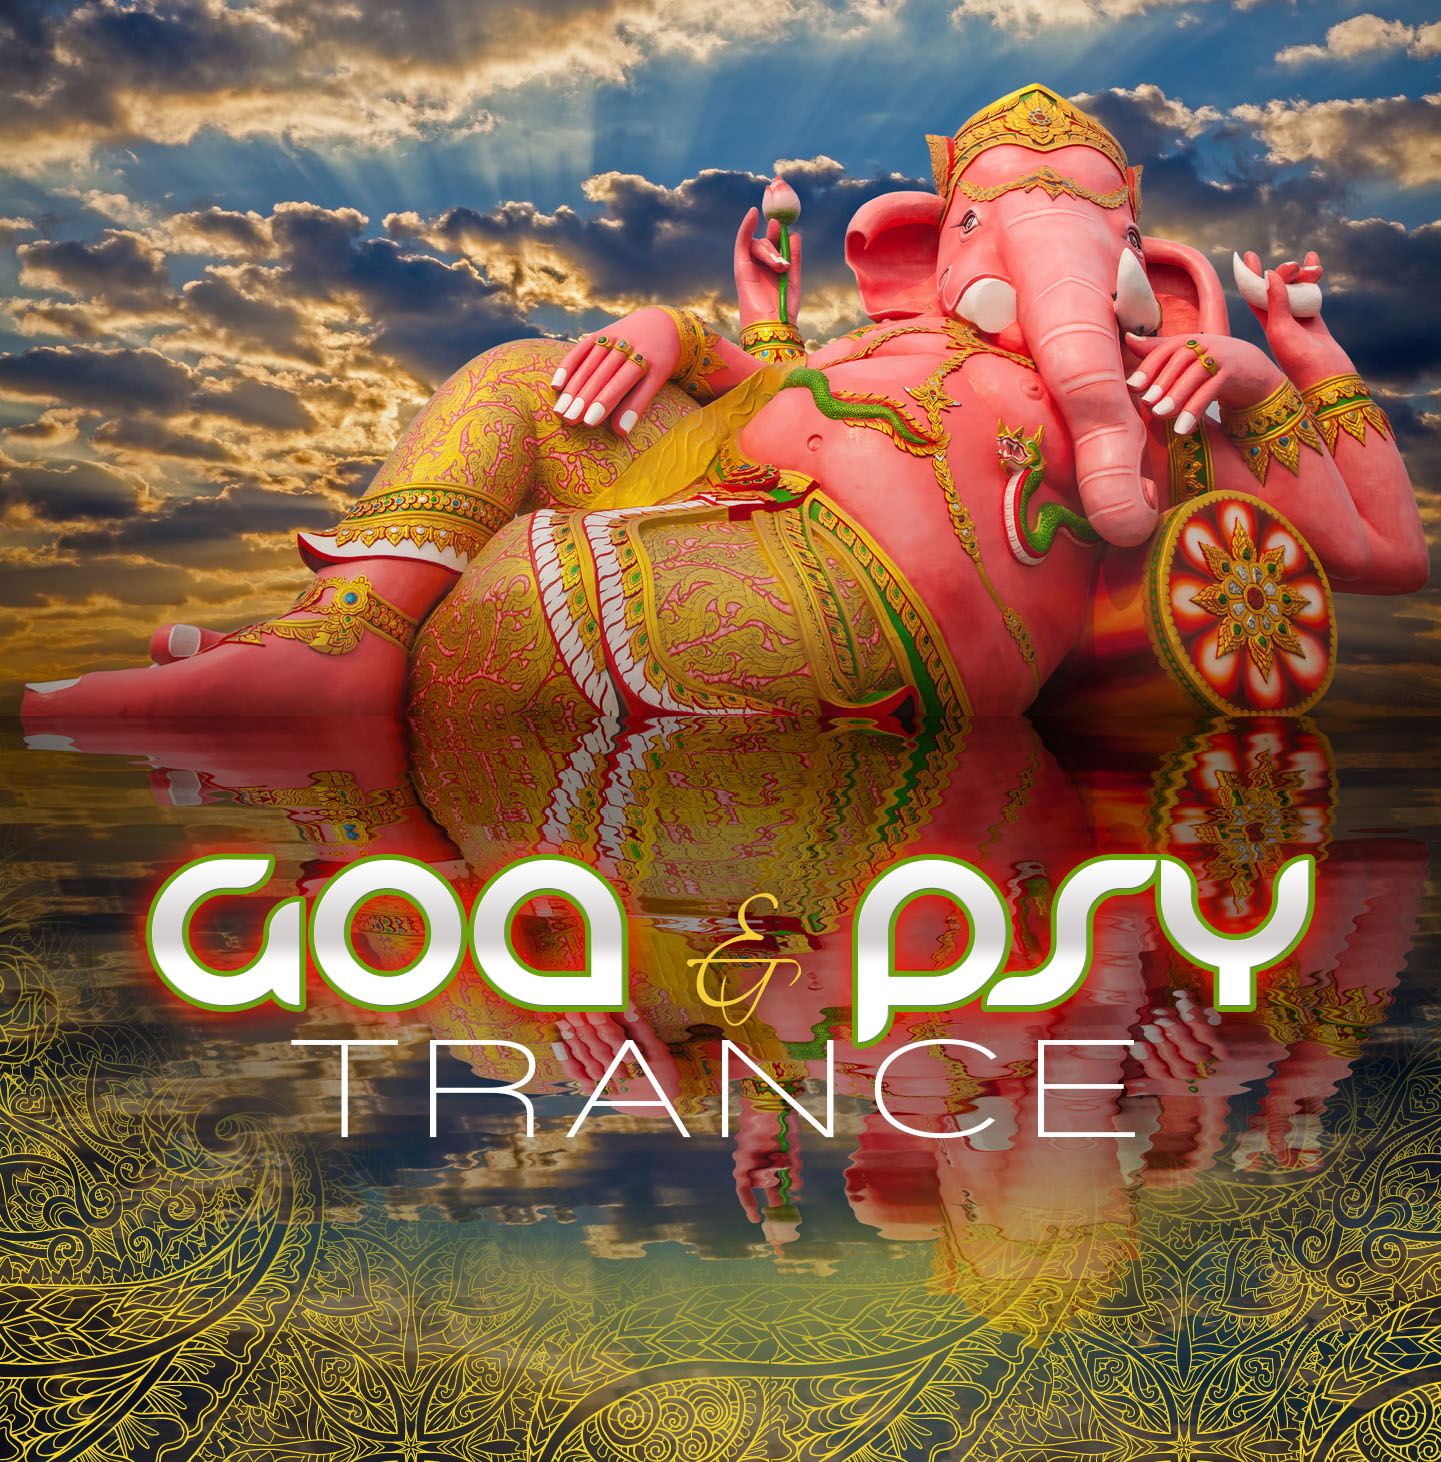 Особенности музыкального стиля Goa psy trance ⋆